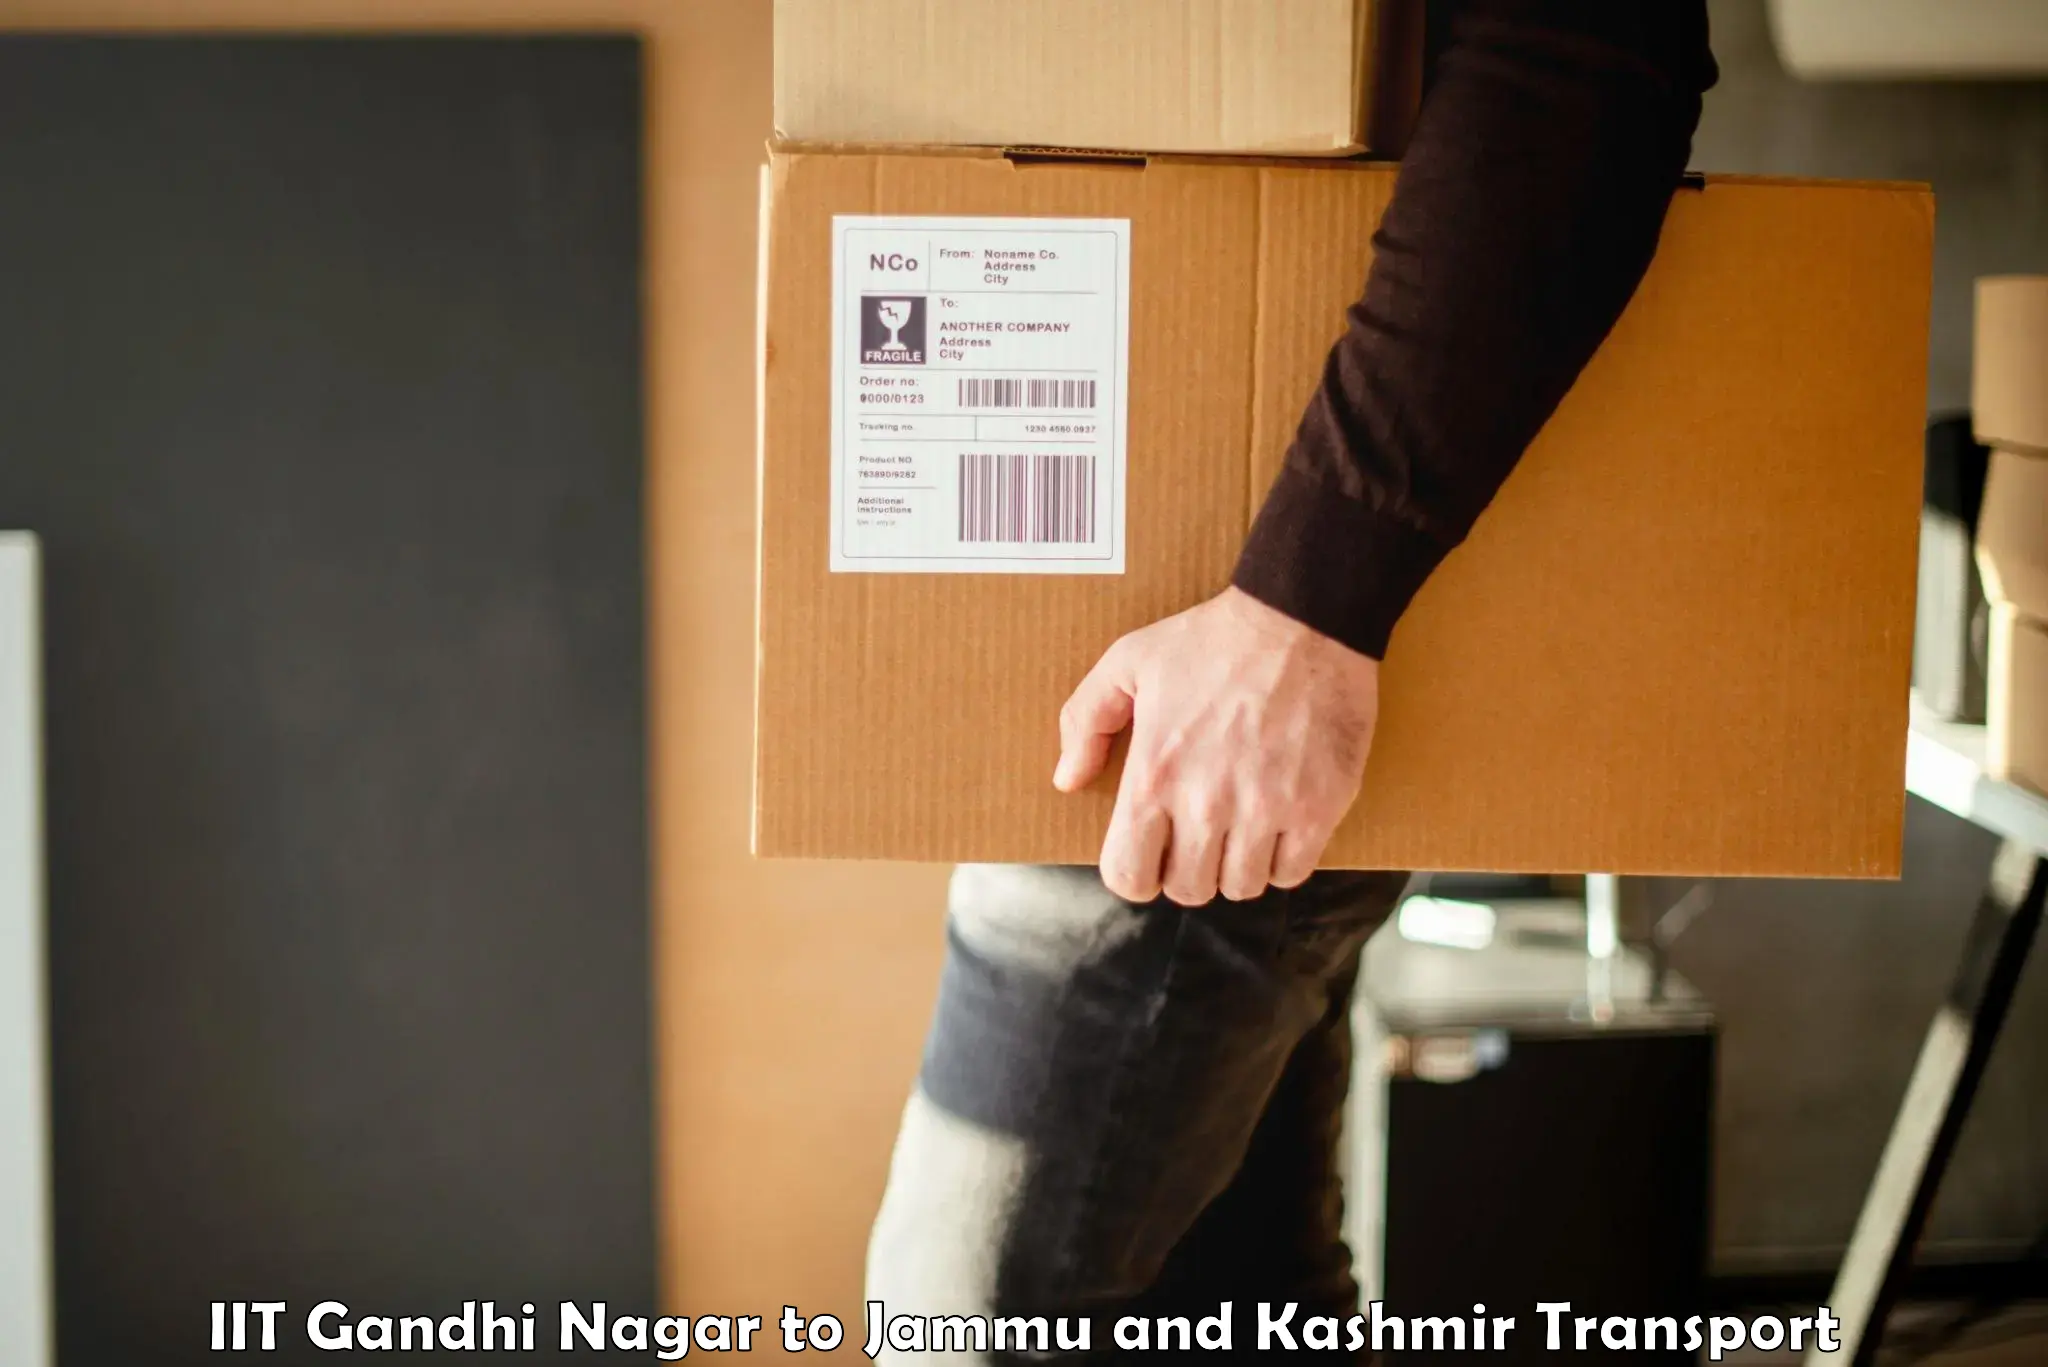 Container transport service IIT Gandhi Nagar to Srinagar Kashmir